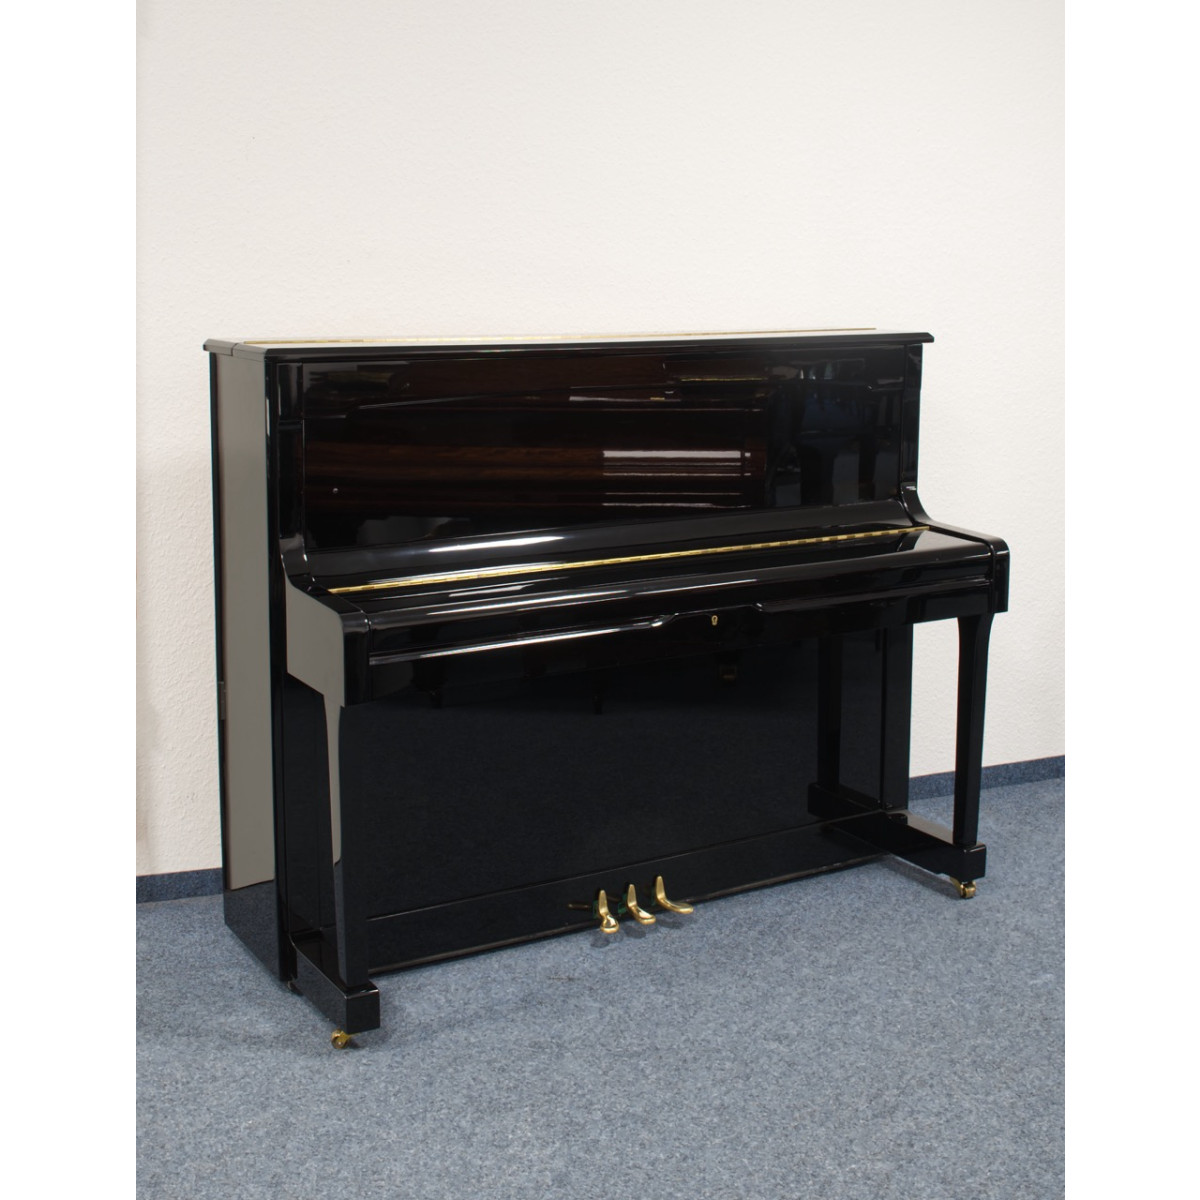 Royale Classic Klavier, Modell 49FRA, schwarz, gebraucht kaufen bei Pianelli, Ansicht: frontal